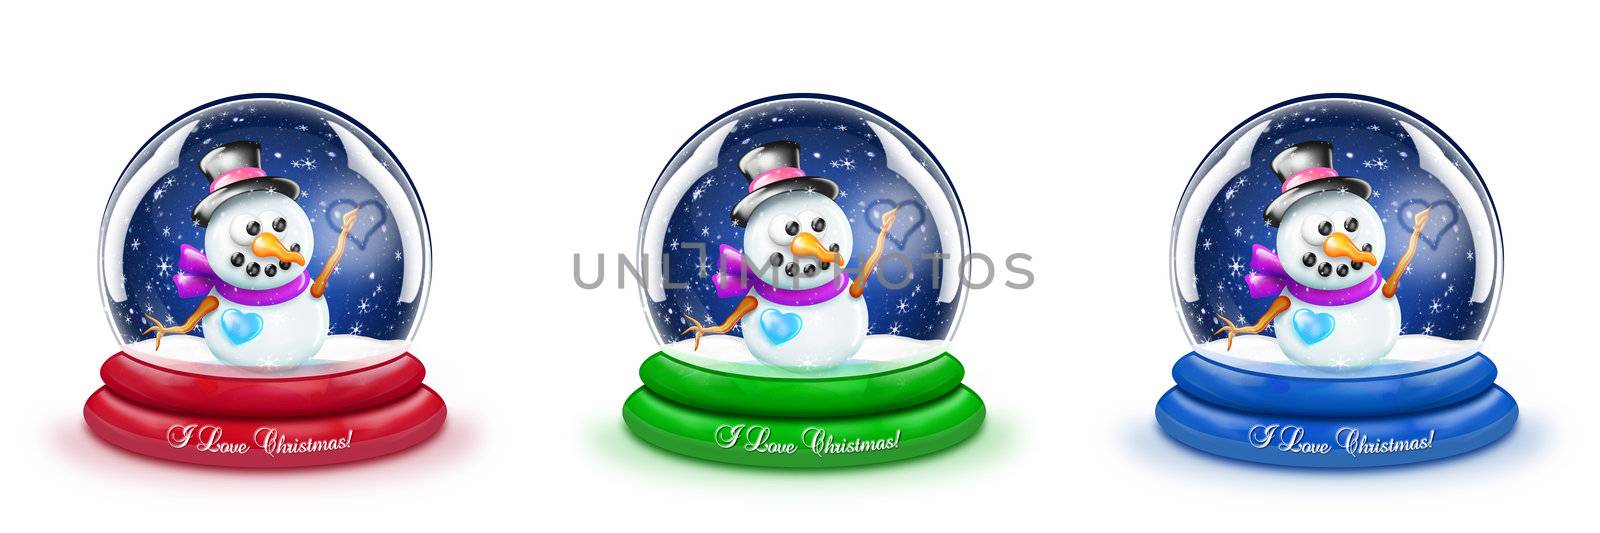 Snowman Snow Globe by komodoempire